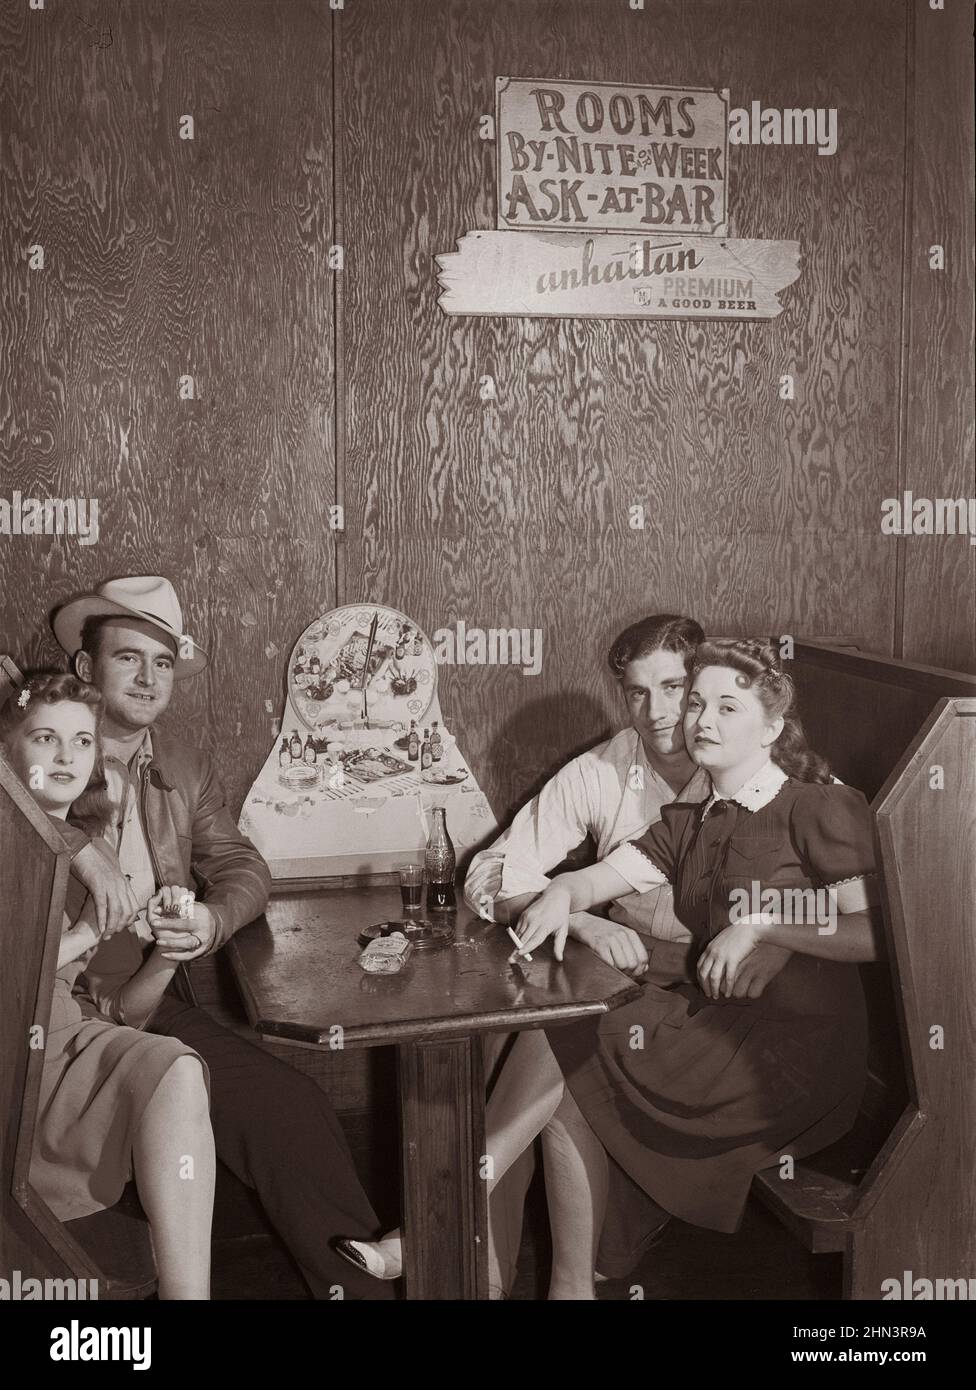 Foto vintage del sur americano en 1940s. Juke juntura y bar en el área de Belle Glade, sección de verduras del centro sur de Florida. Febrero 1941 Foto de stock